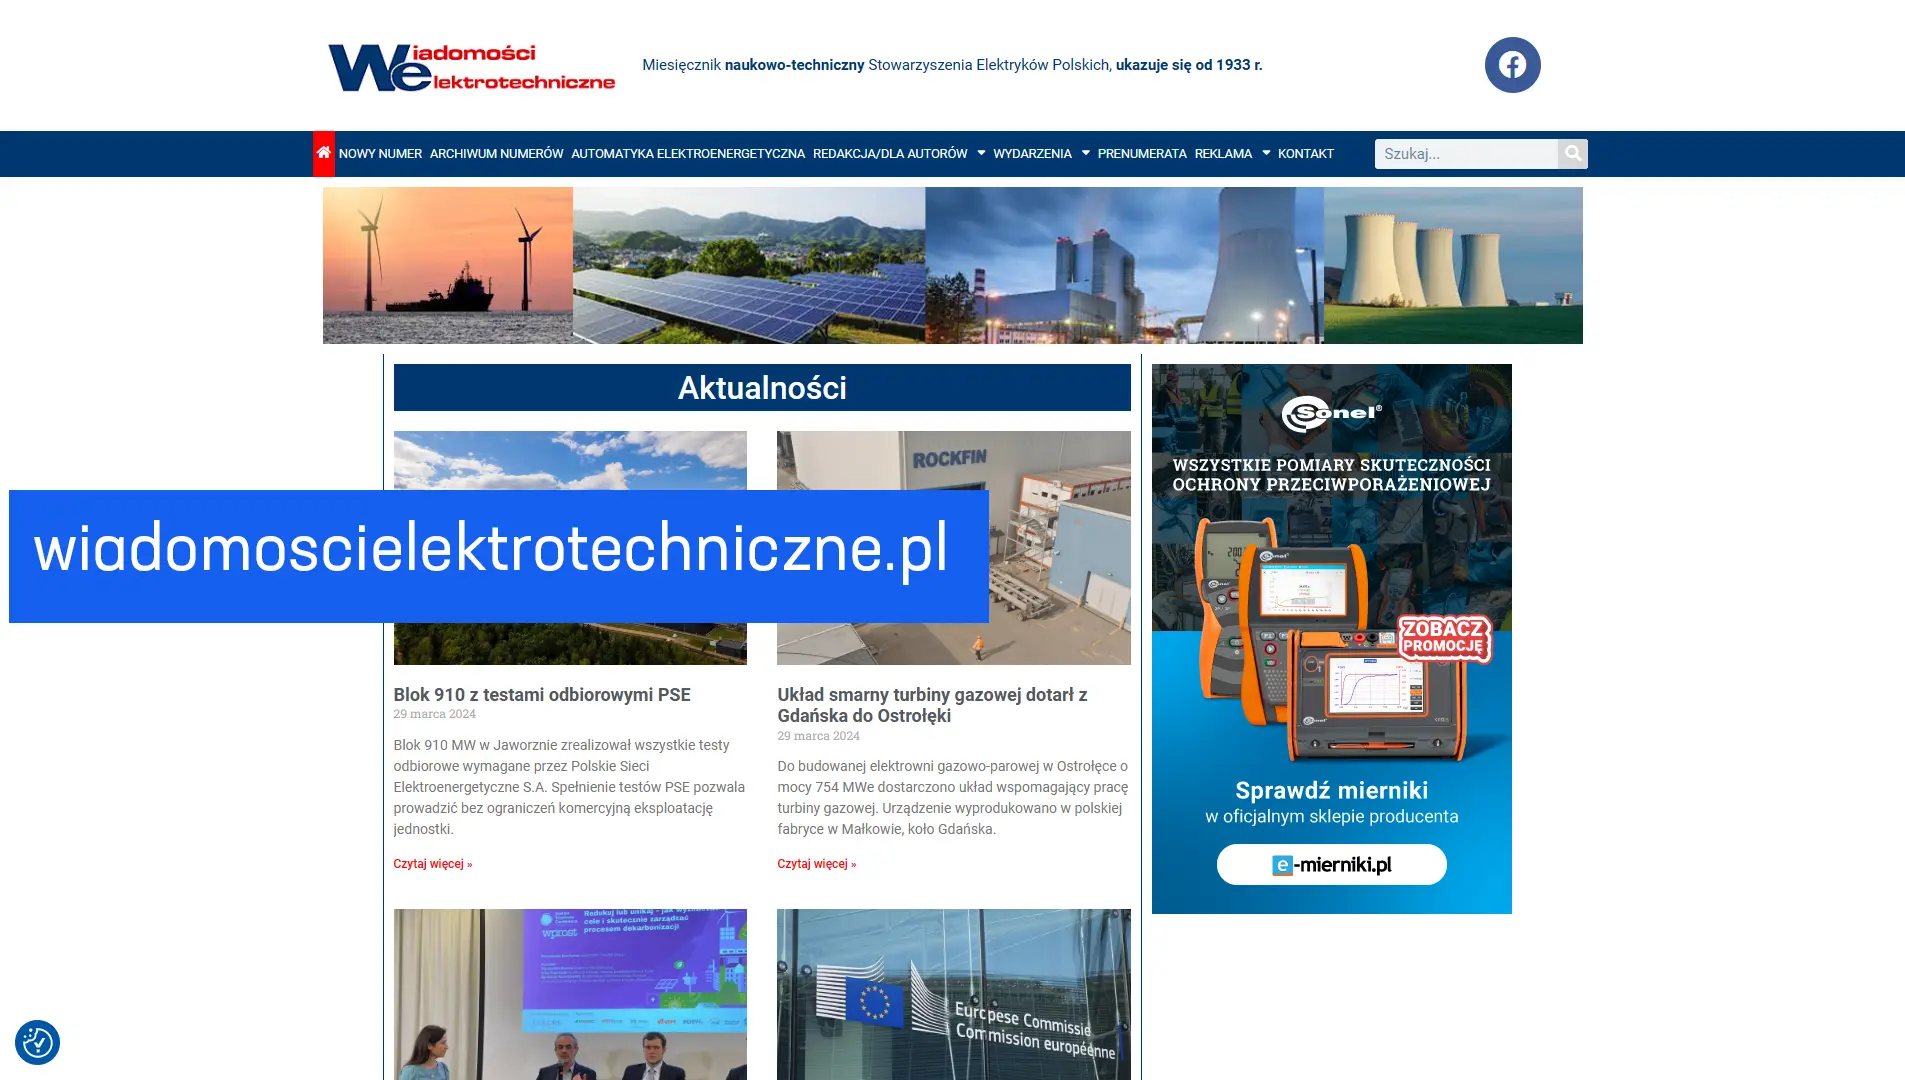 www.wiadomoscielektrotechniczne.pl